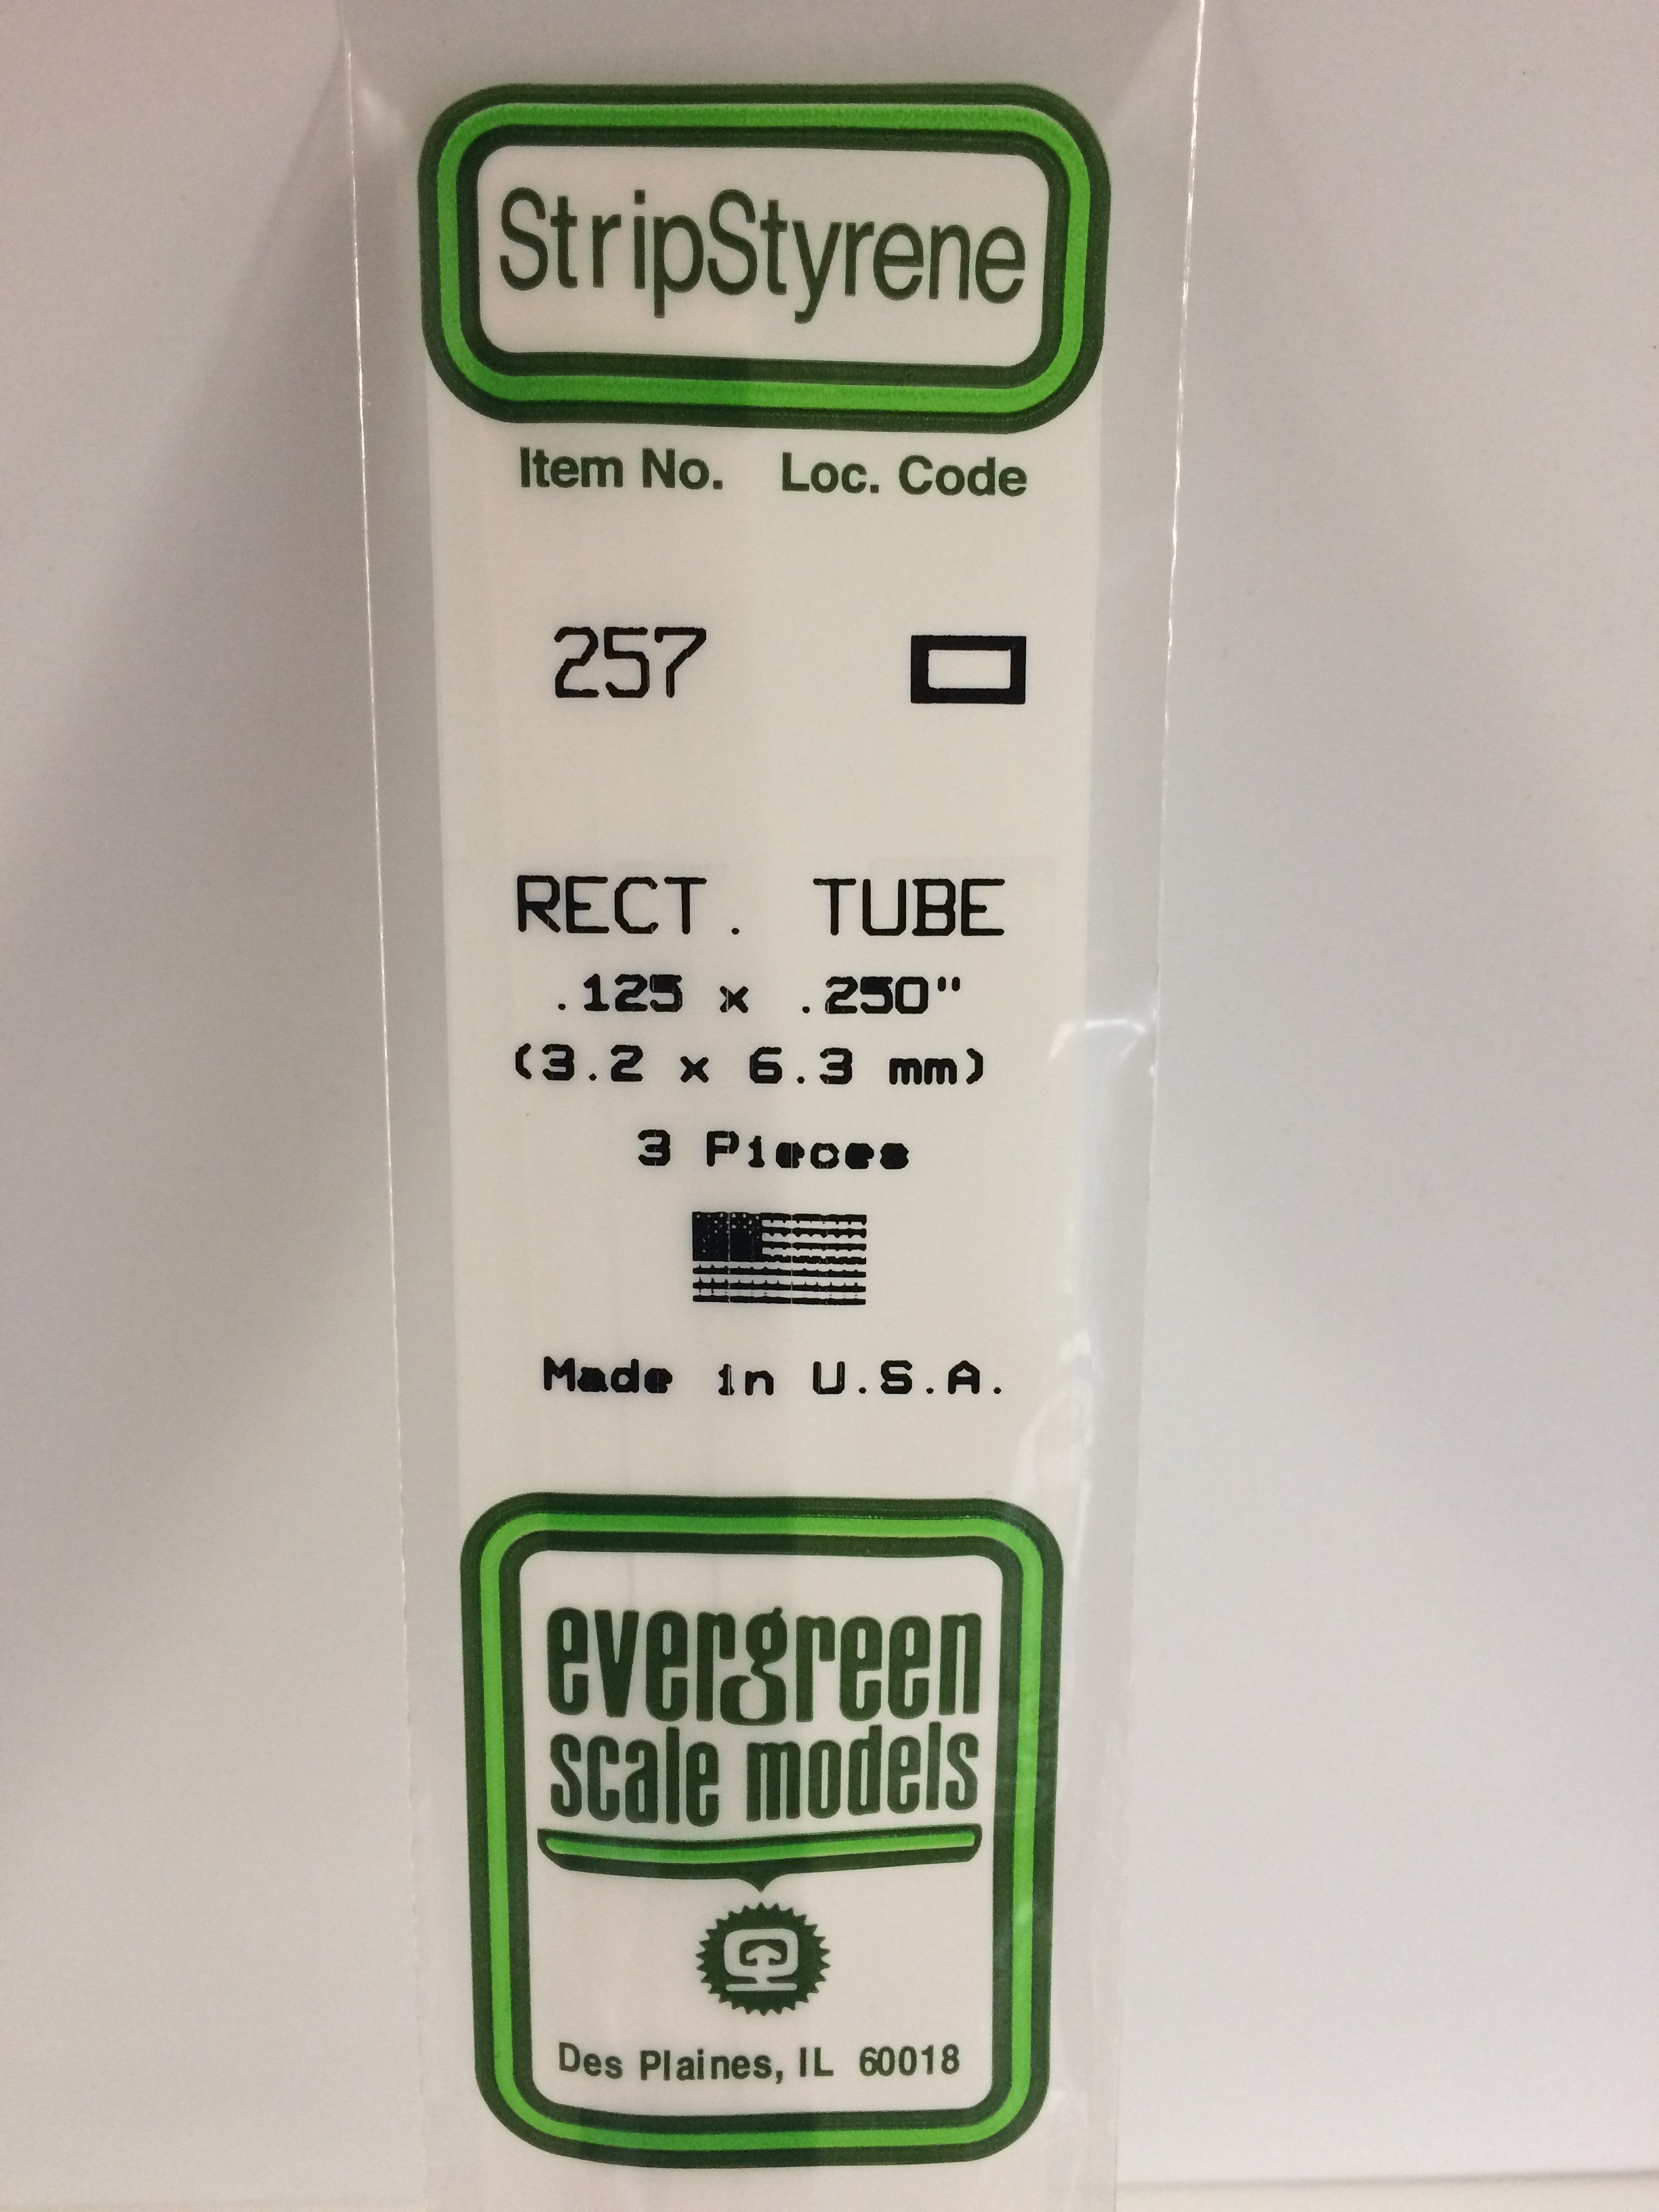 76600 PLASTIC TWEEZERS 2 PACK - Evergreen Scale Models